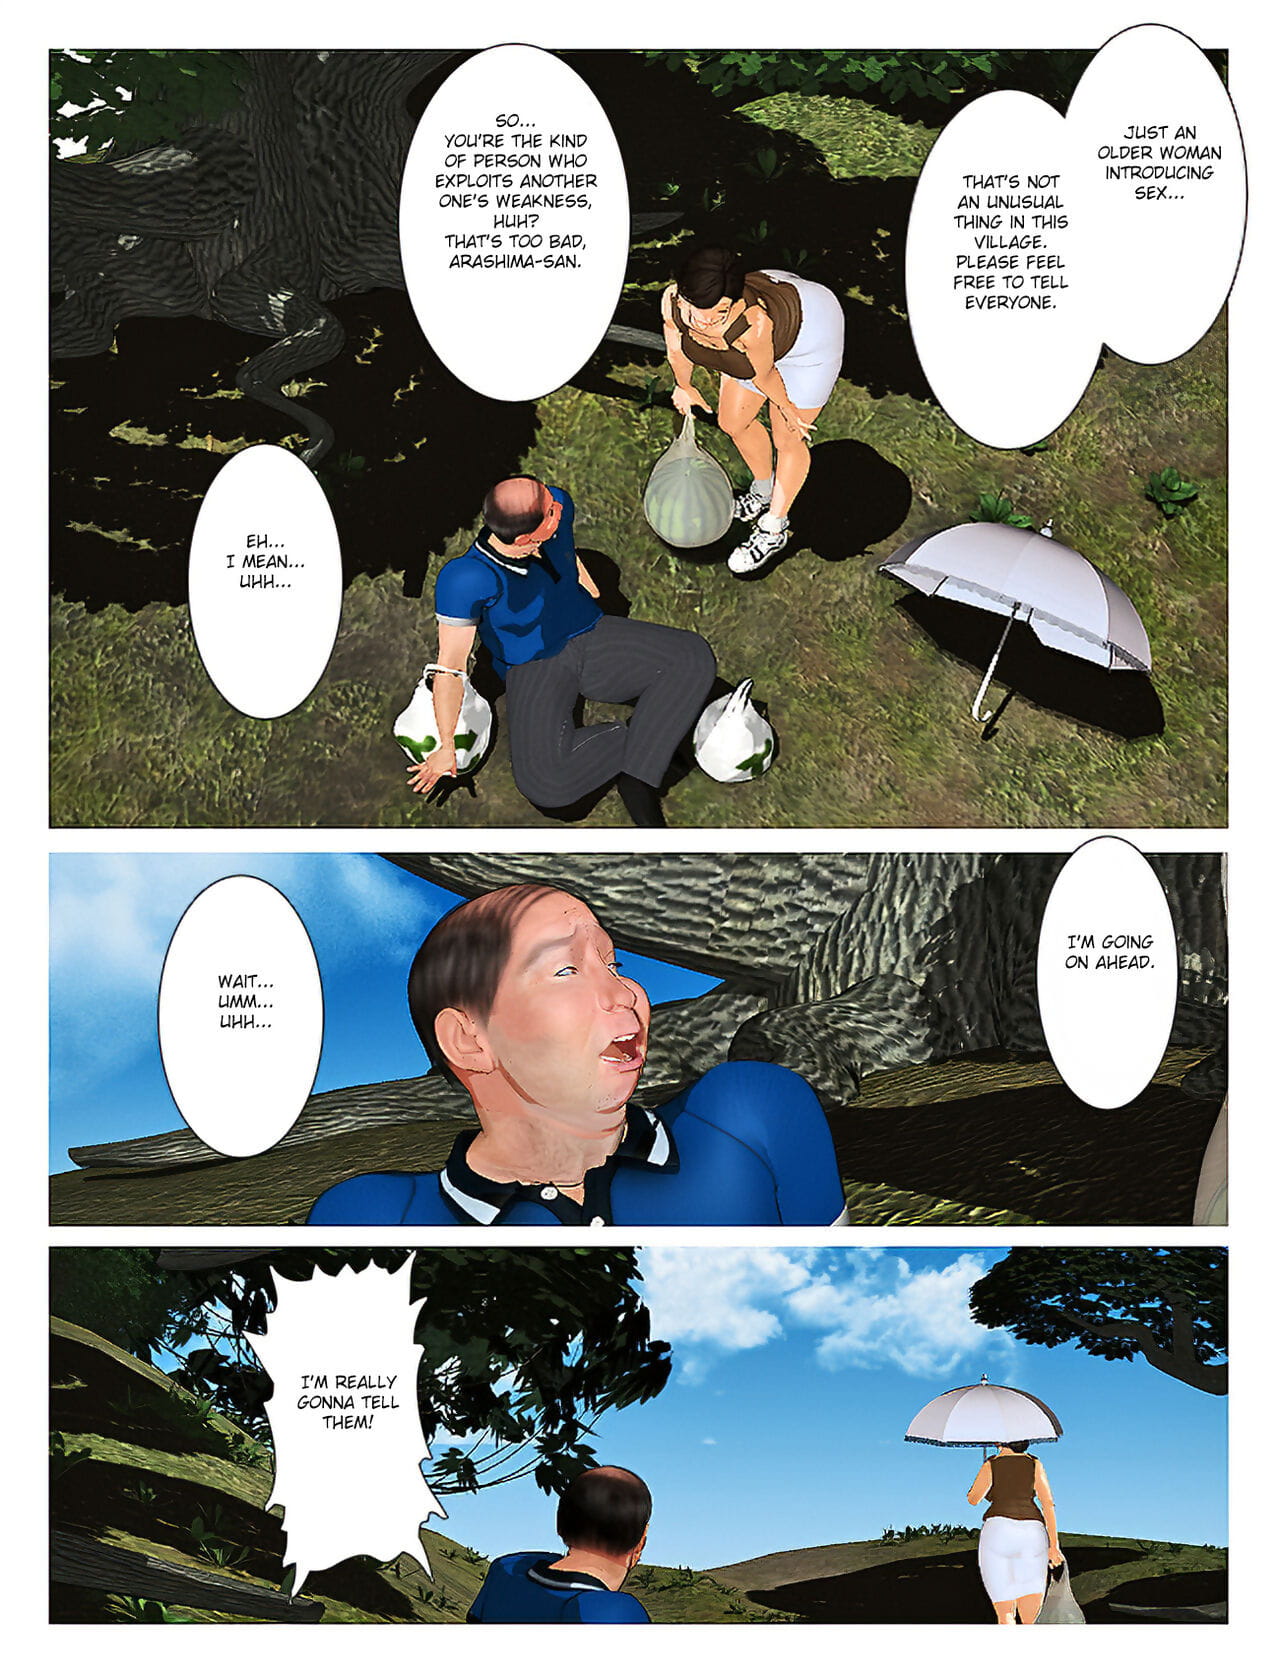 쿄우 no 미사코 산 2019:2 page 1